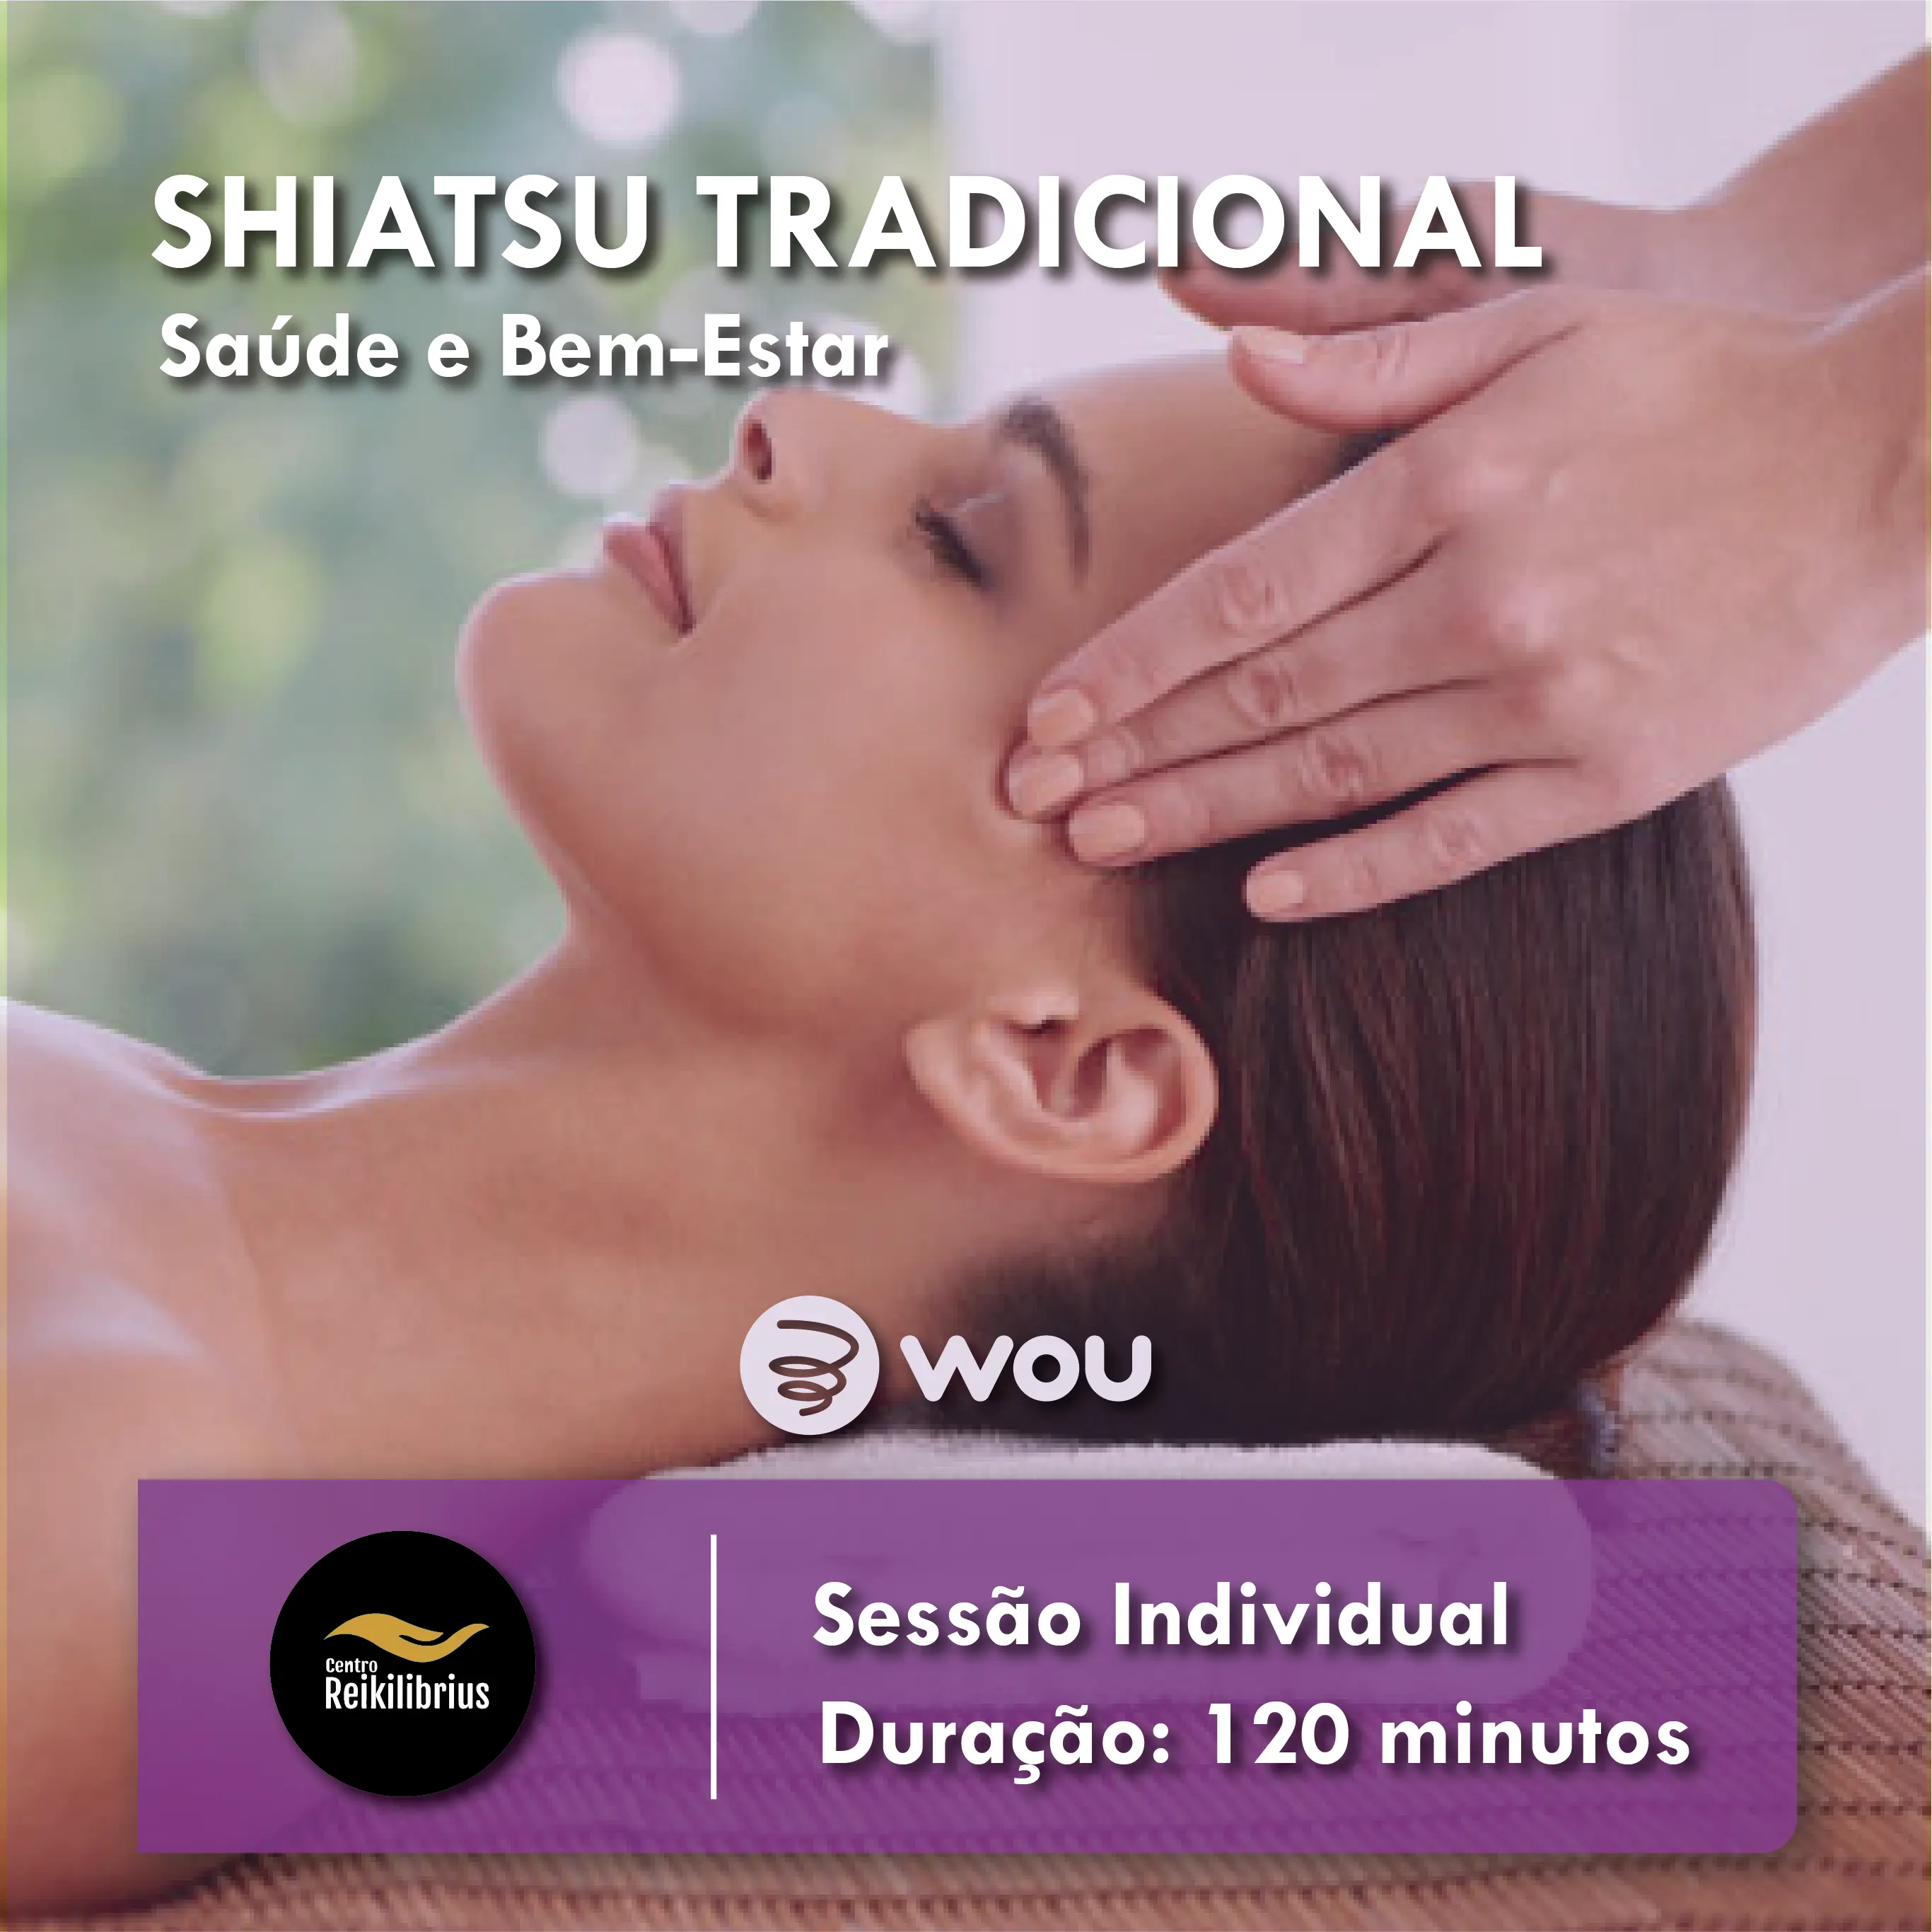 Traditional Shiatsu Massage in Aveiro